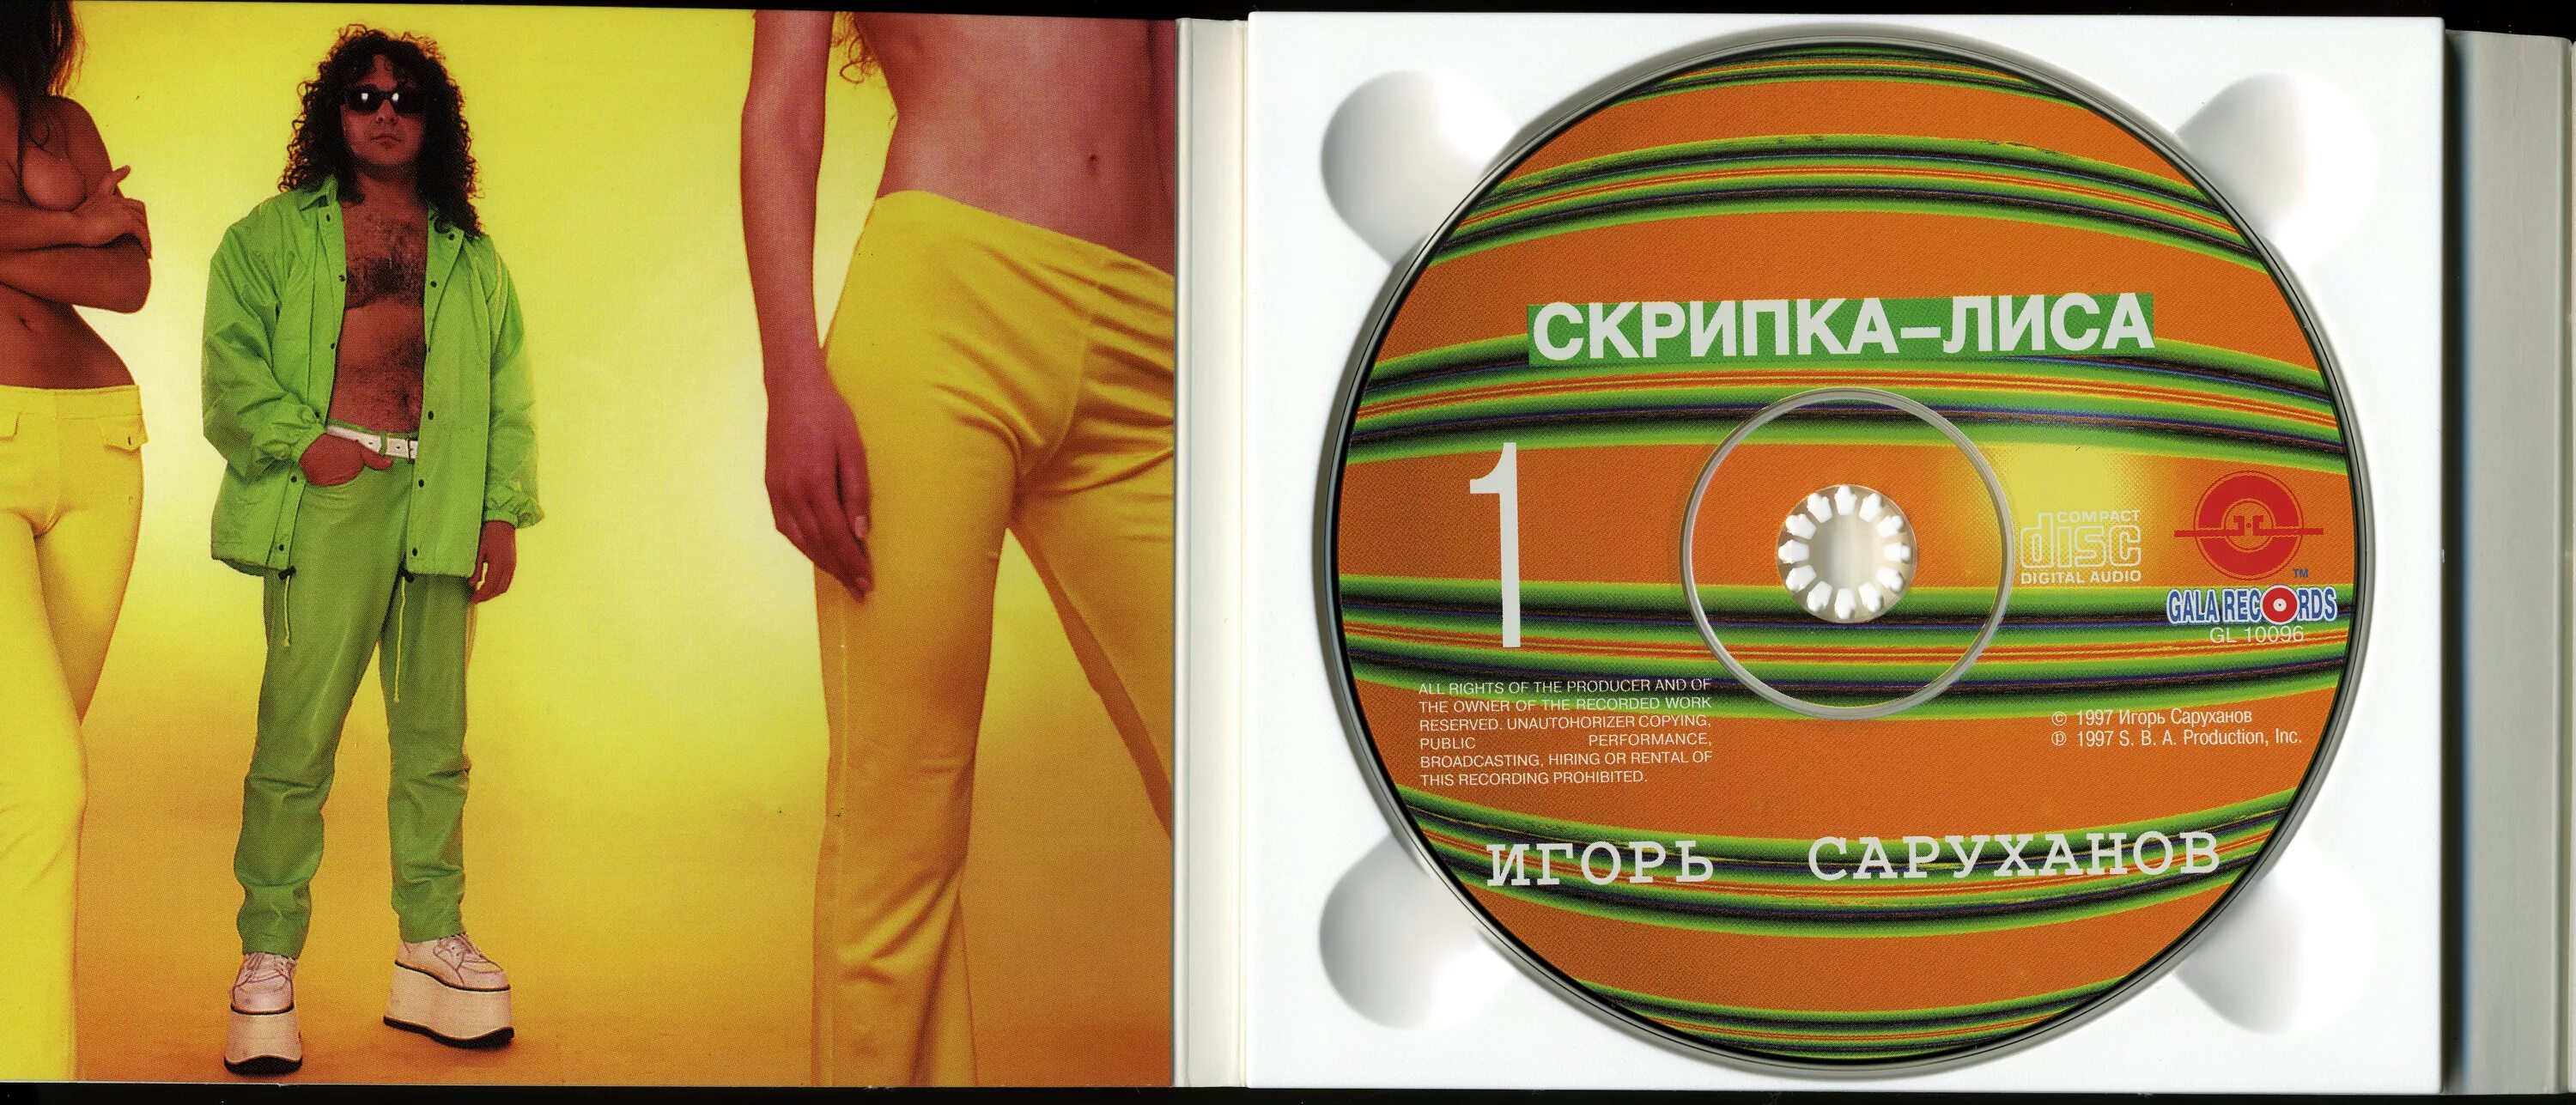 Песня саруханова скрипка лиса. 1997 - Скрипка-лиса.